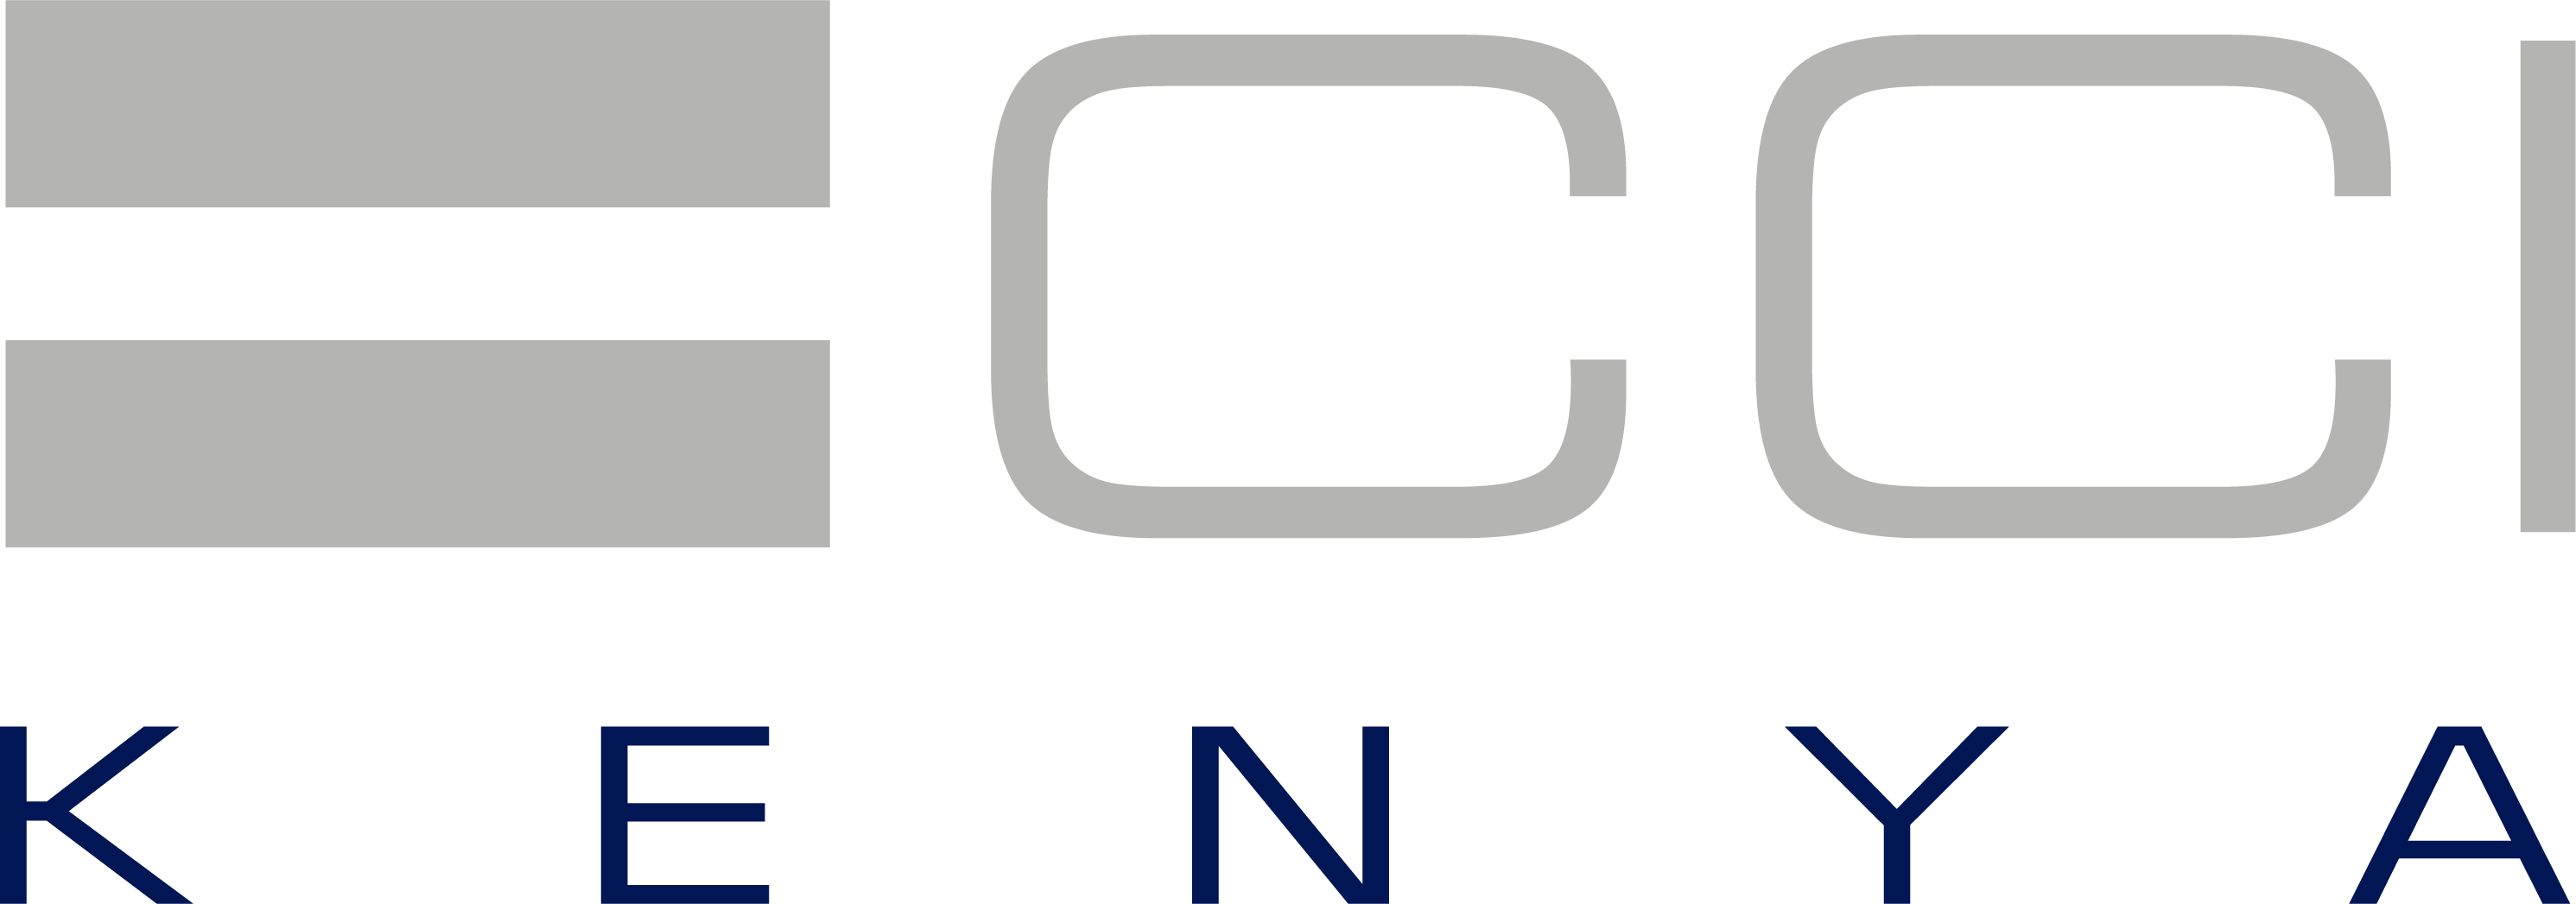 CCI Logo